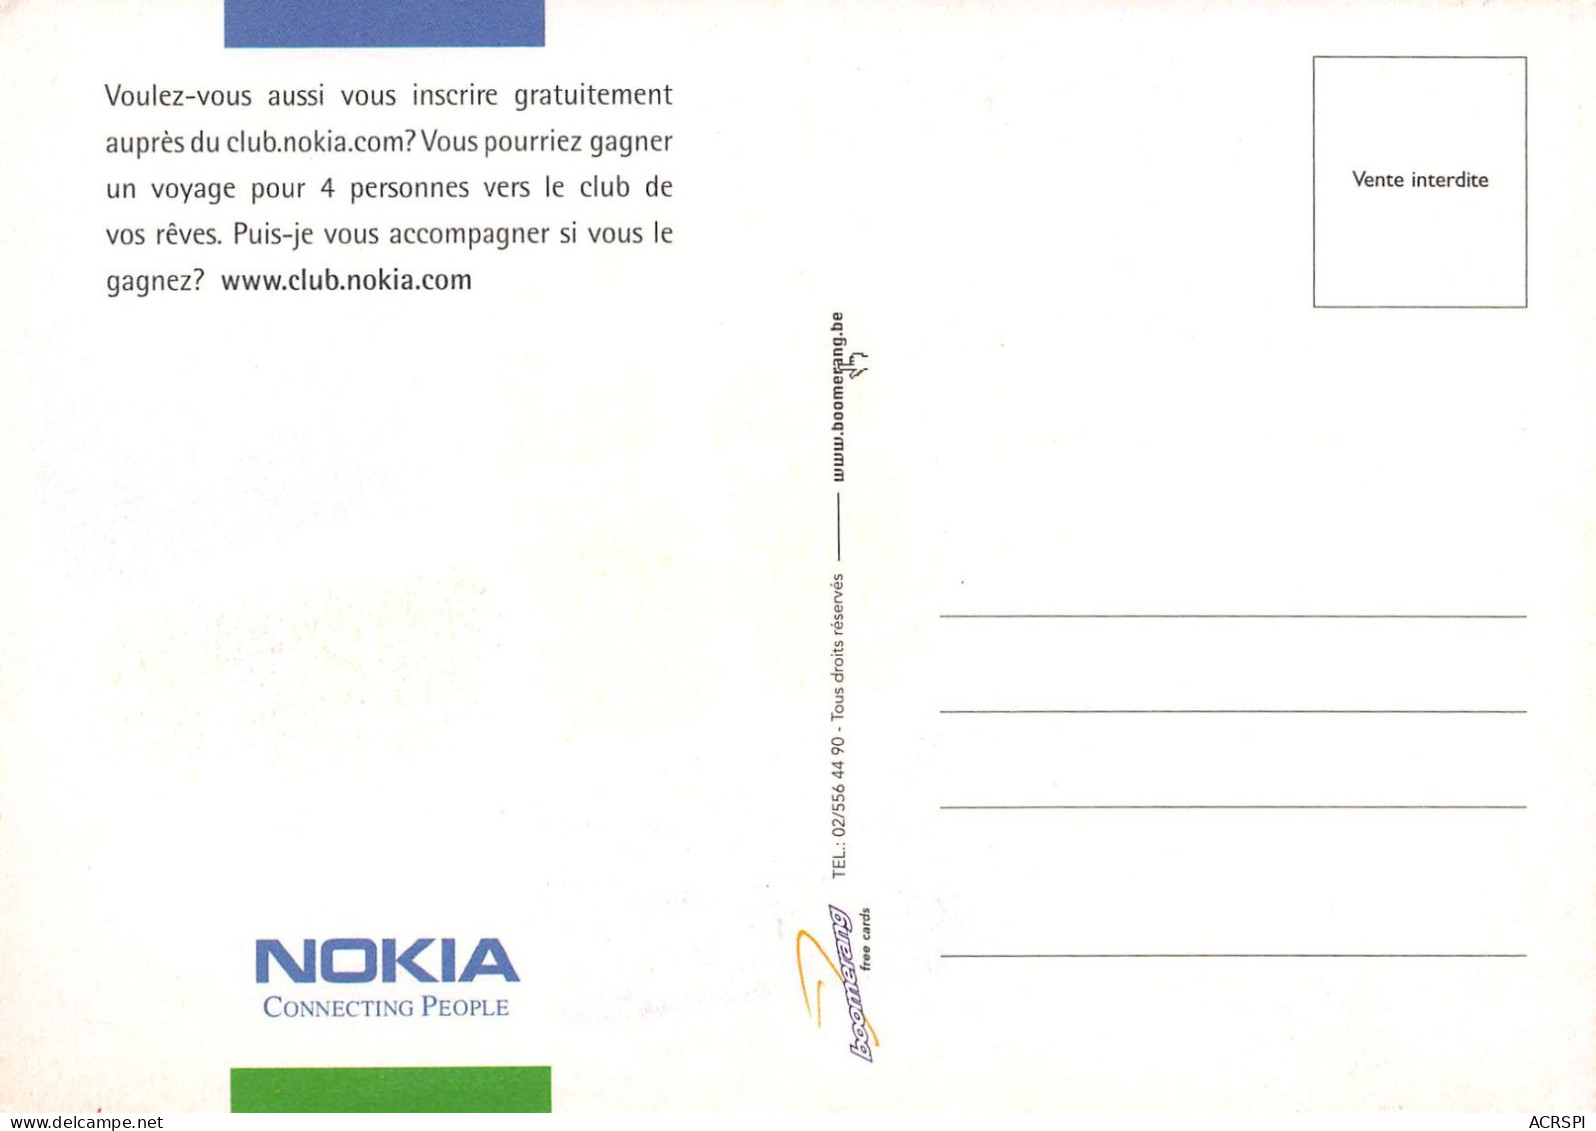 Nokia Mobile OY Finlande Multinationale De Télécommunications Téléphone  Boomerang  (scanR/V)   N° 67 \MR8005 - Finlande